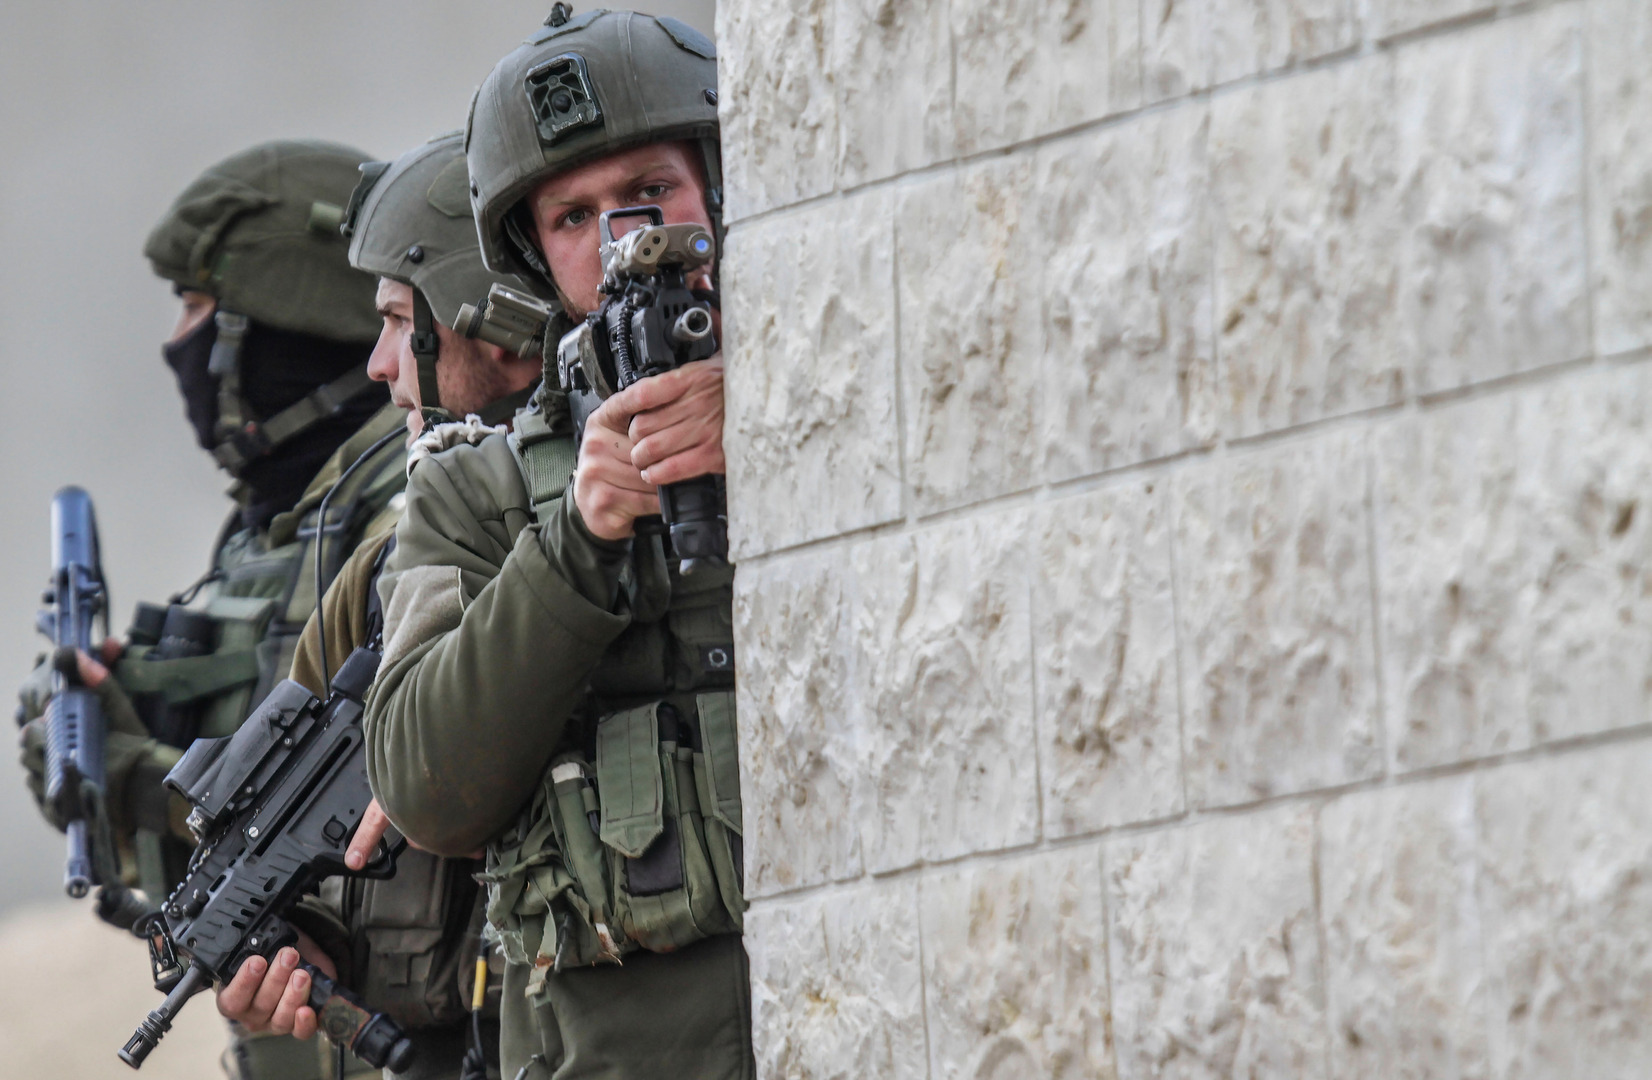 القوات الإسرائيلية تنفذ اقتحامات جديدة لمناطق بالضفة الغربية وتعتقل عددا من الفلسطينيين